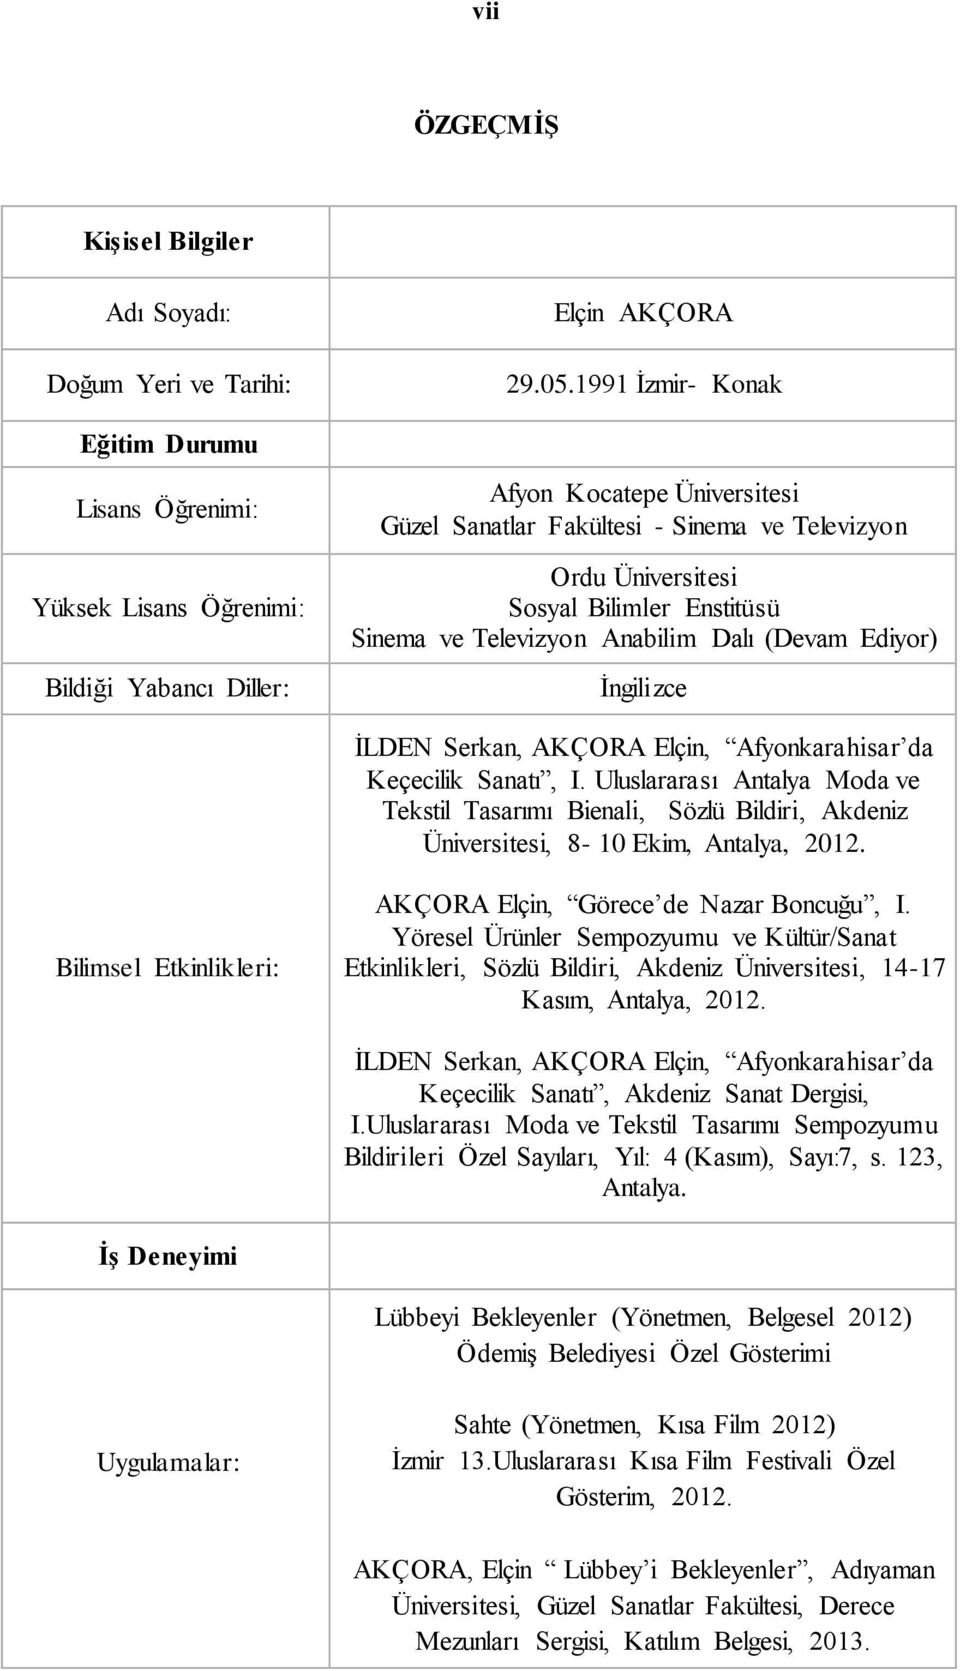 İLDEN Serkan, AKÇORA Elçin, Afyonkarahisar da Keçecilik Sanatı, I. Uluslararası Antalya Moda ve Tekstil Tasarımı Bienali, Sözlü Bildiri, Akdeniz Üniversitesi, 8-10 Ekim, Antalya, 2012.